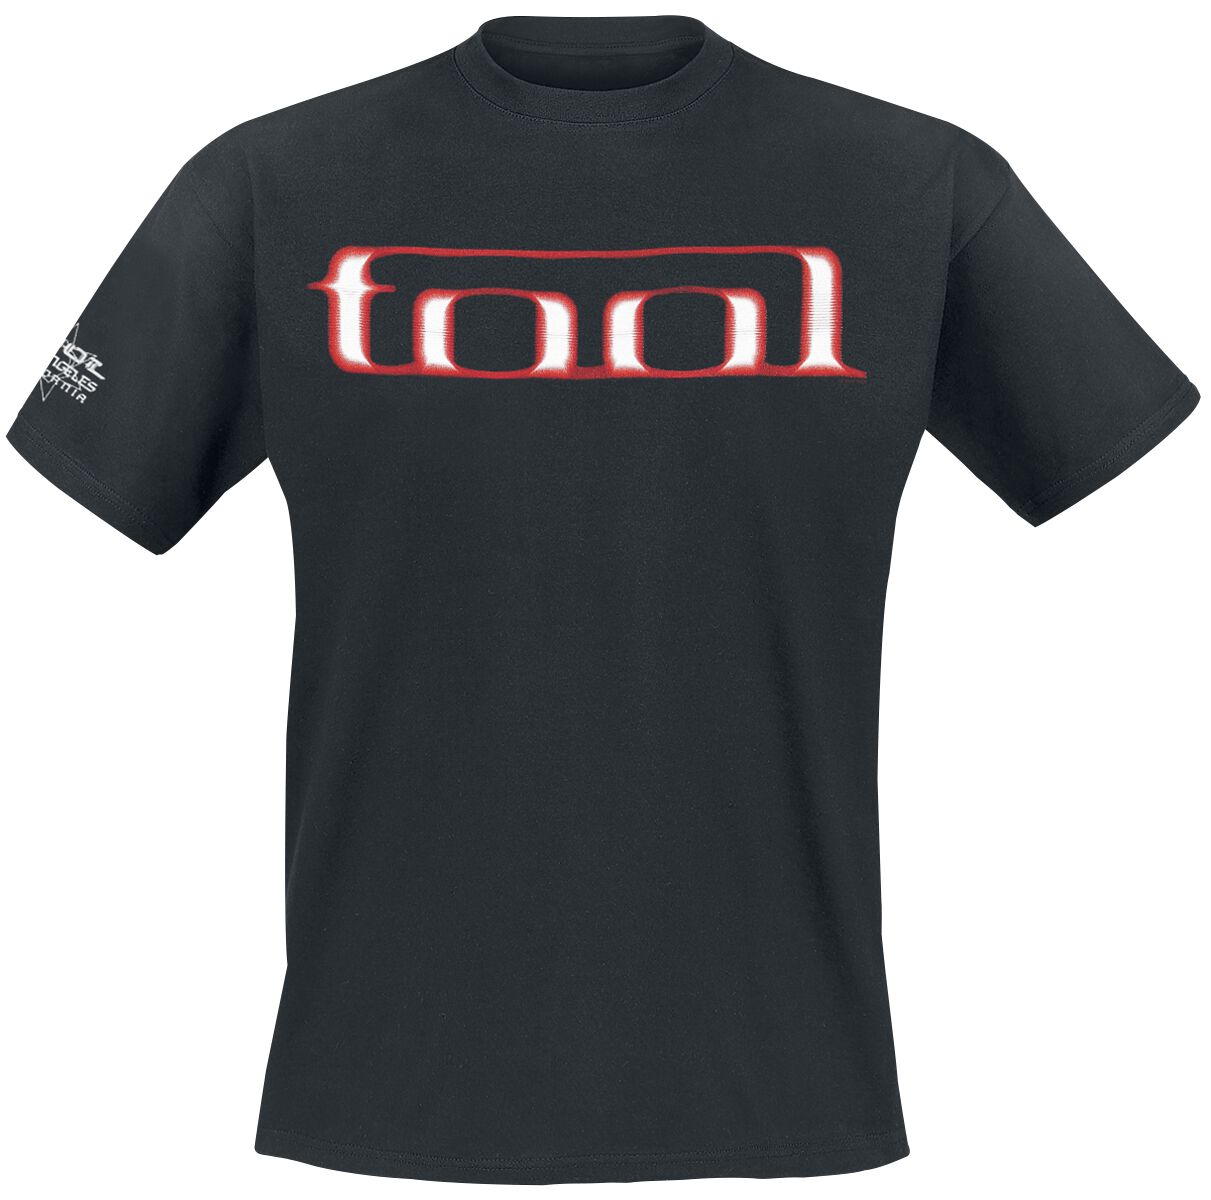 Tool T-Shirt - Grid Skull - S bis XXL - für Männer - Größe L - schwarz  - Lizenziertes Merchandise!